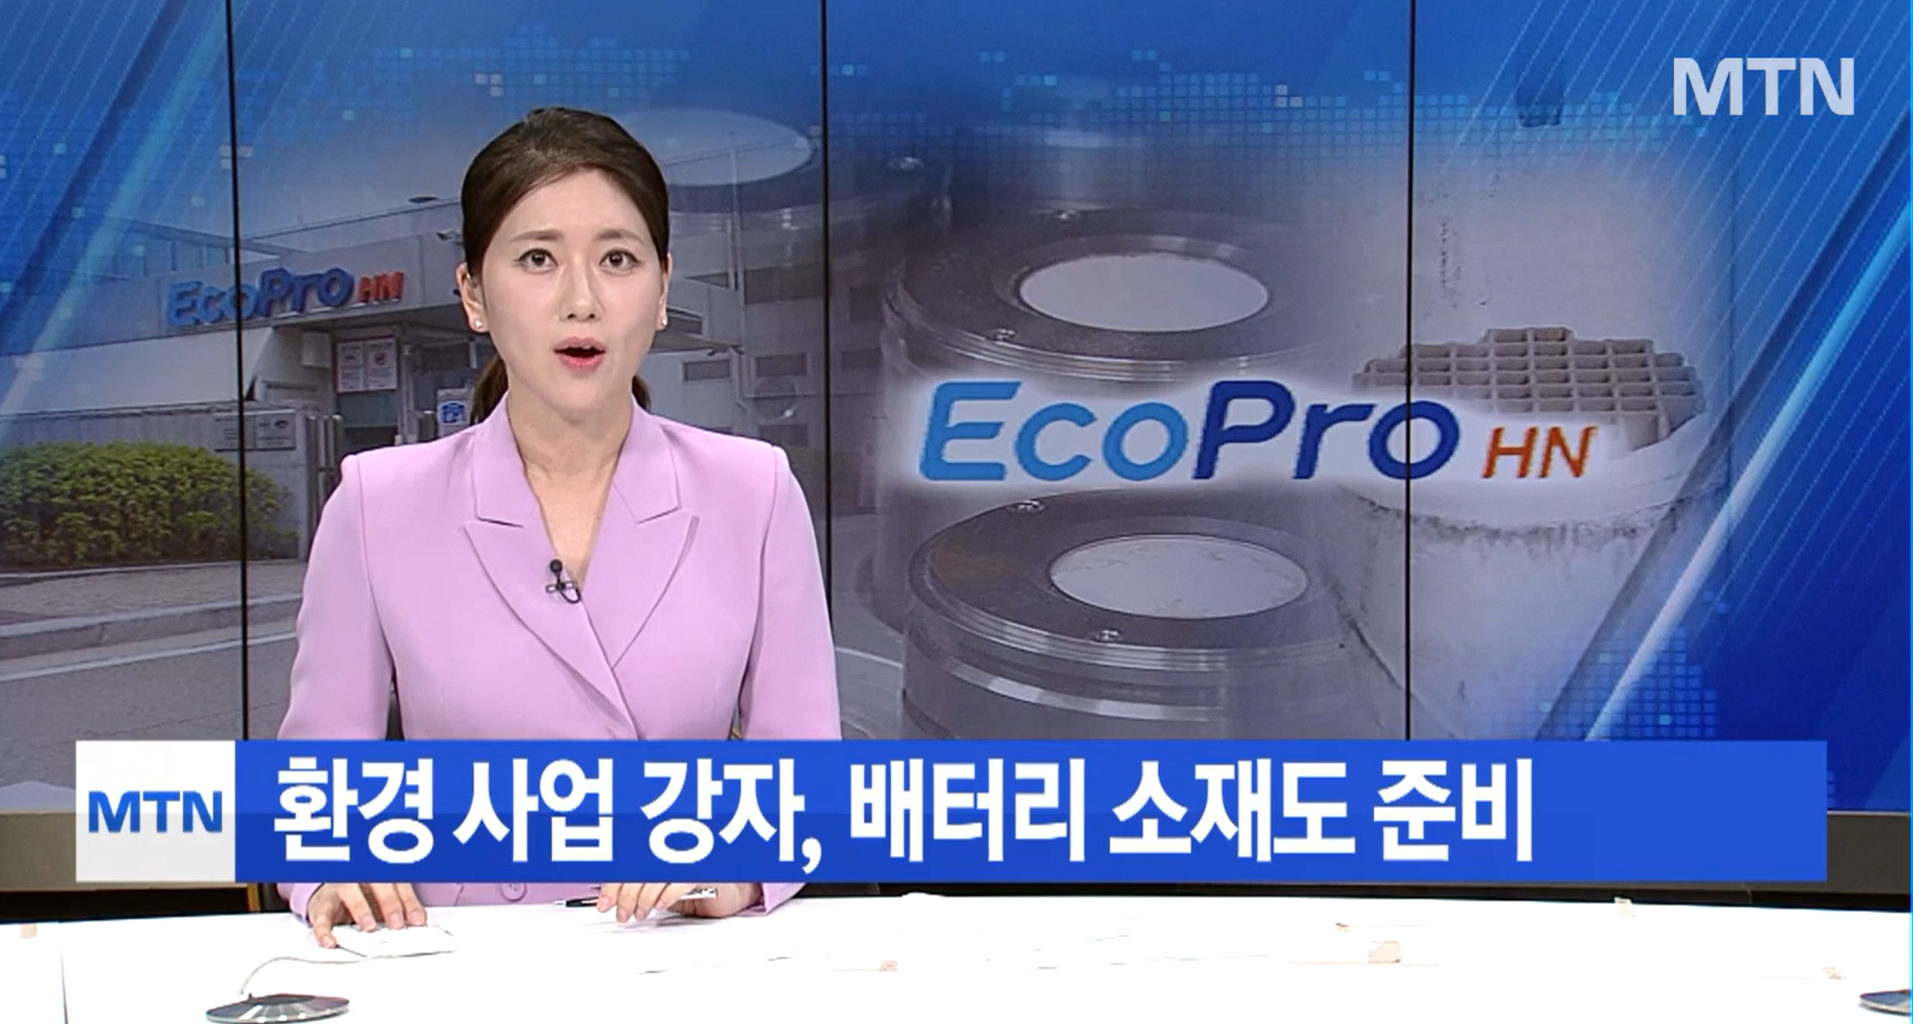 [뉴스] 환경 사업 강자 에코프로에이치엔, 배터리 소재도 올라탄다 / 머니투데이방송(MTN)